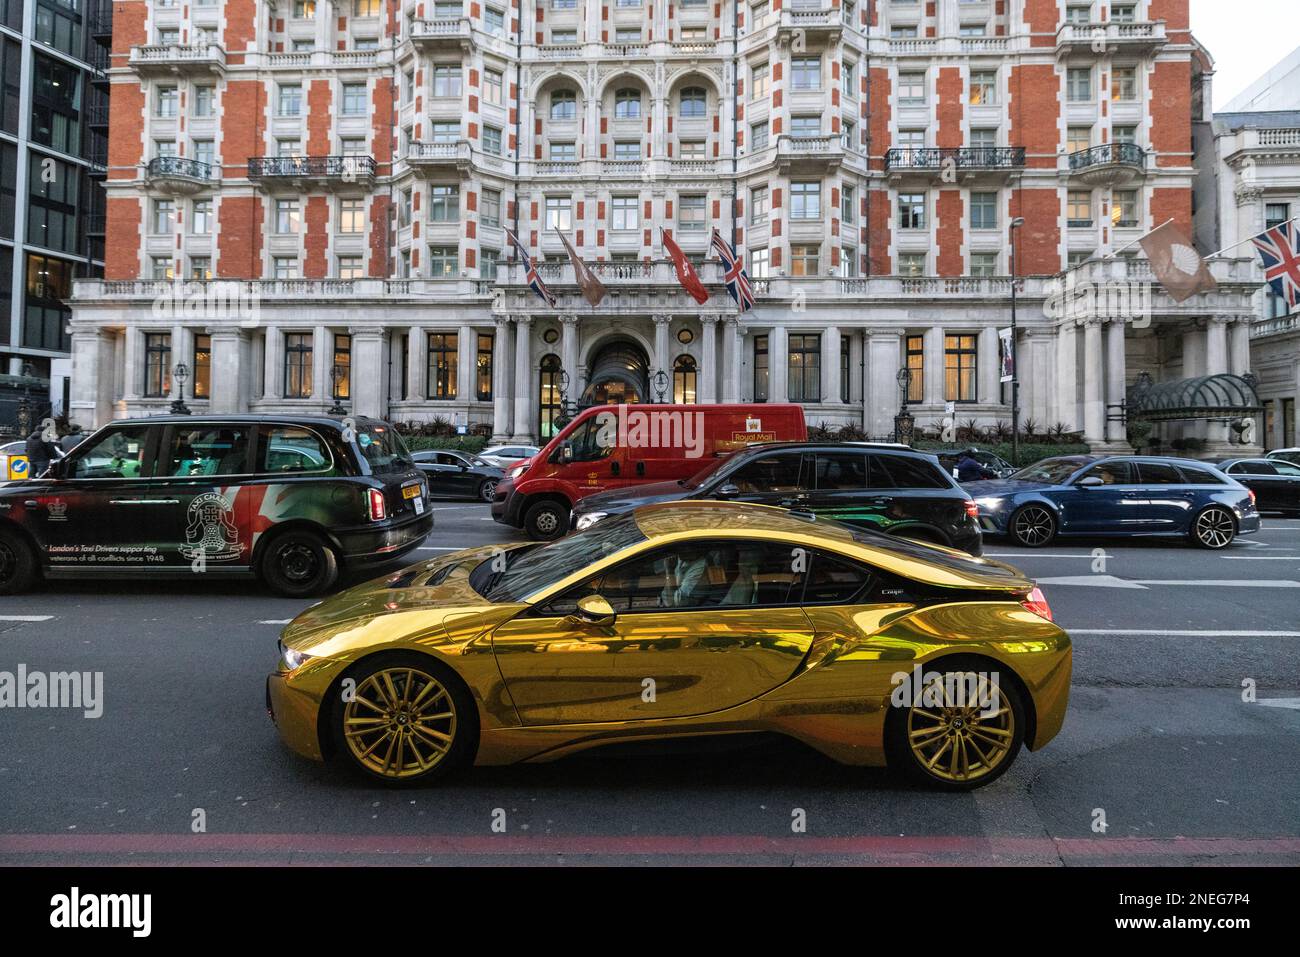 Das luxuriöse Gold BMW Coupé-Fahrzeug wurde im Rush-Hour-Verkehr entlang Knightsbridge, im Zentrum von London, England, Großbritannien, eingefangen Stockfoto